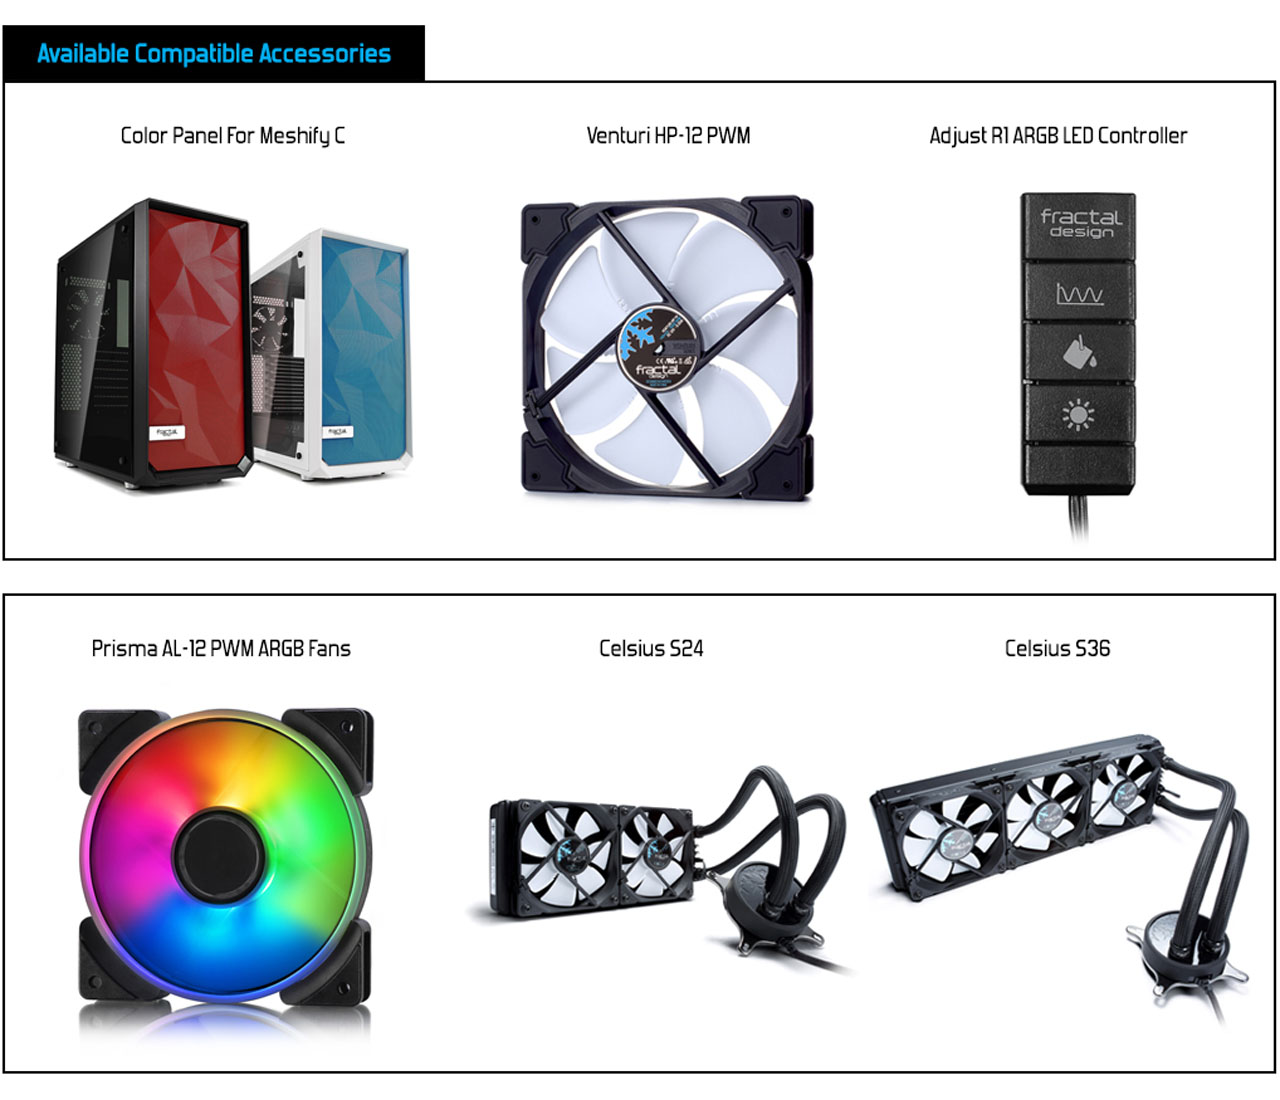 Available Compatible Accessories: Color Panel For Meshify C + Venturi HP-12 PWM + Adjust R1 ARGB LED Controller + Prisma AL-12 PWM ARGB Fans + Celsius S24 + Celsius S36